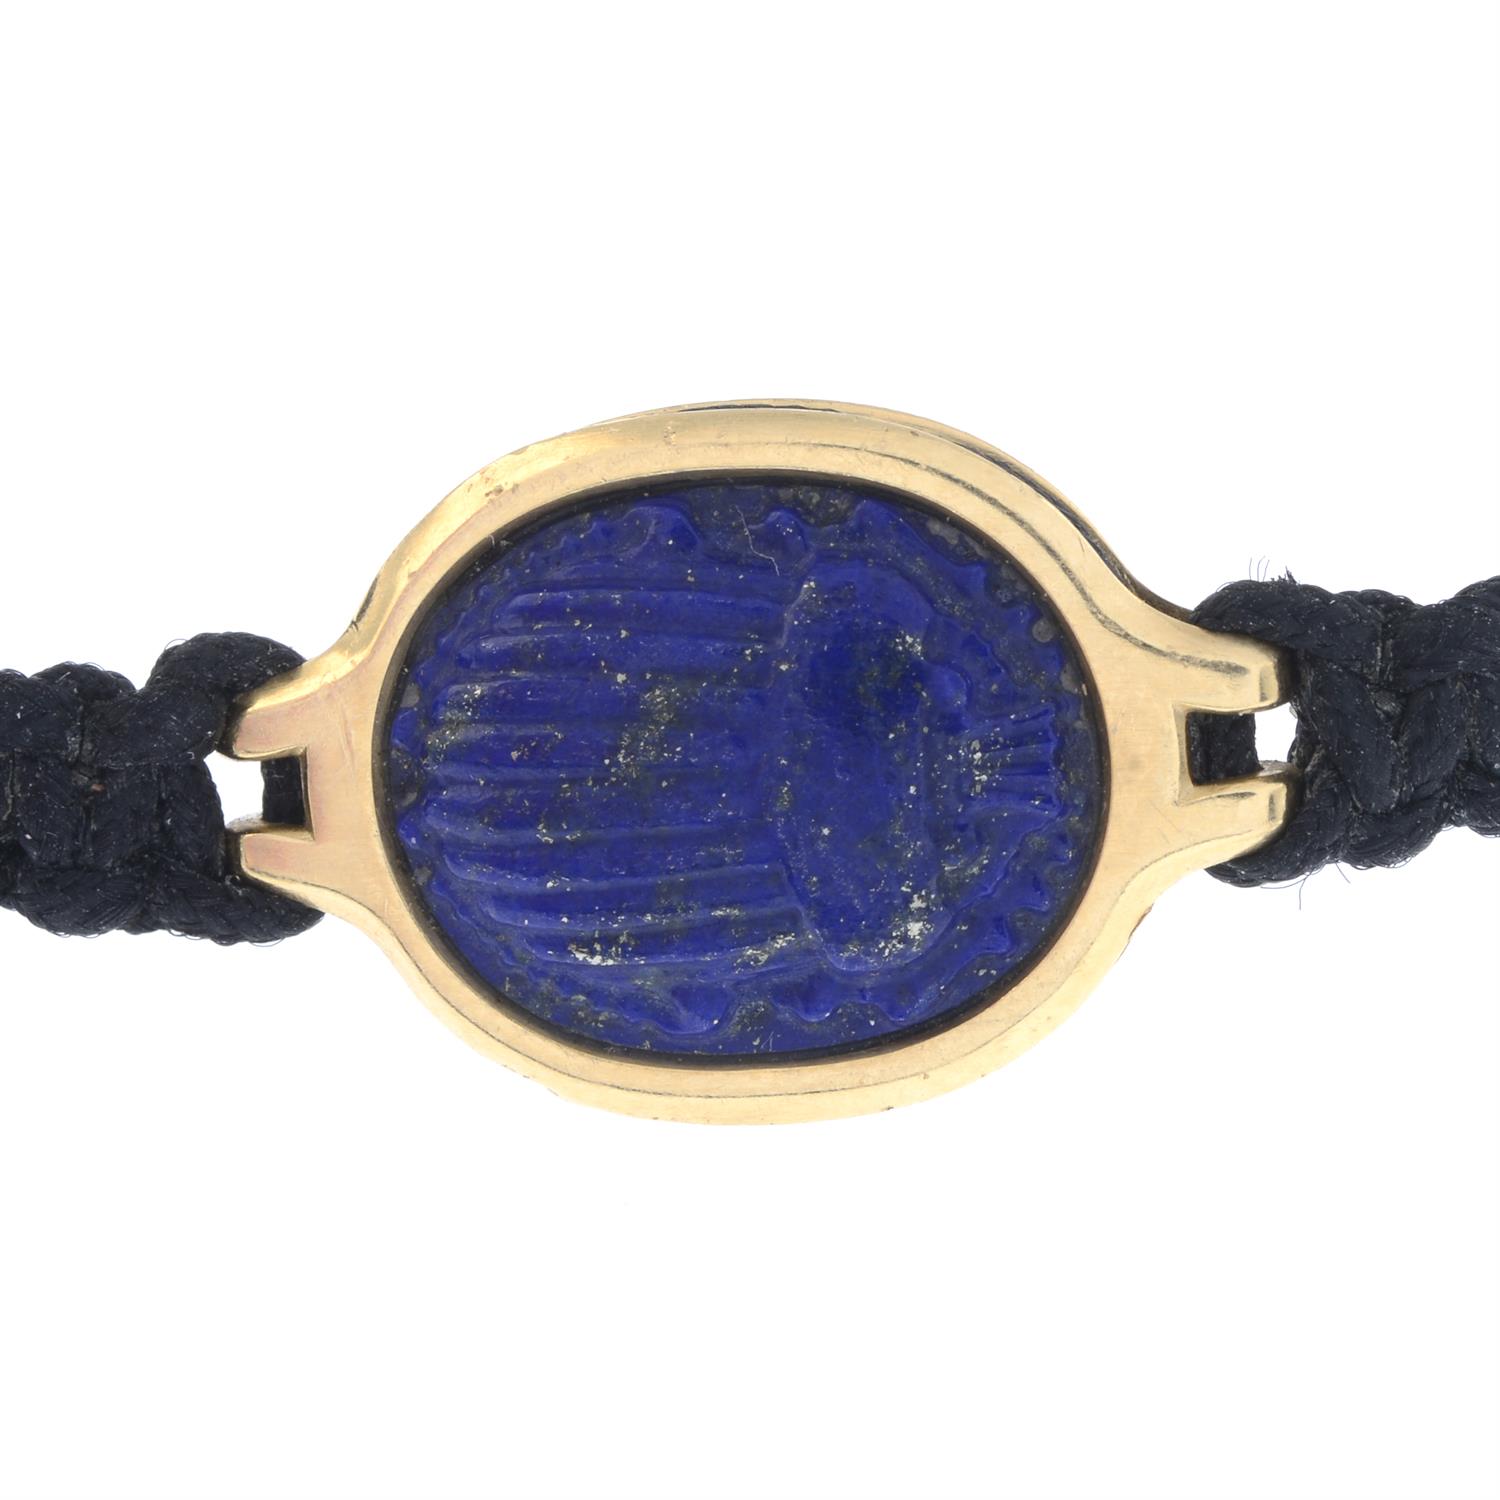 Lapis lazuli scrab bracelet, David Yurman - Image 2 of 2